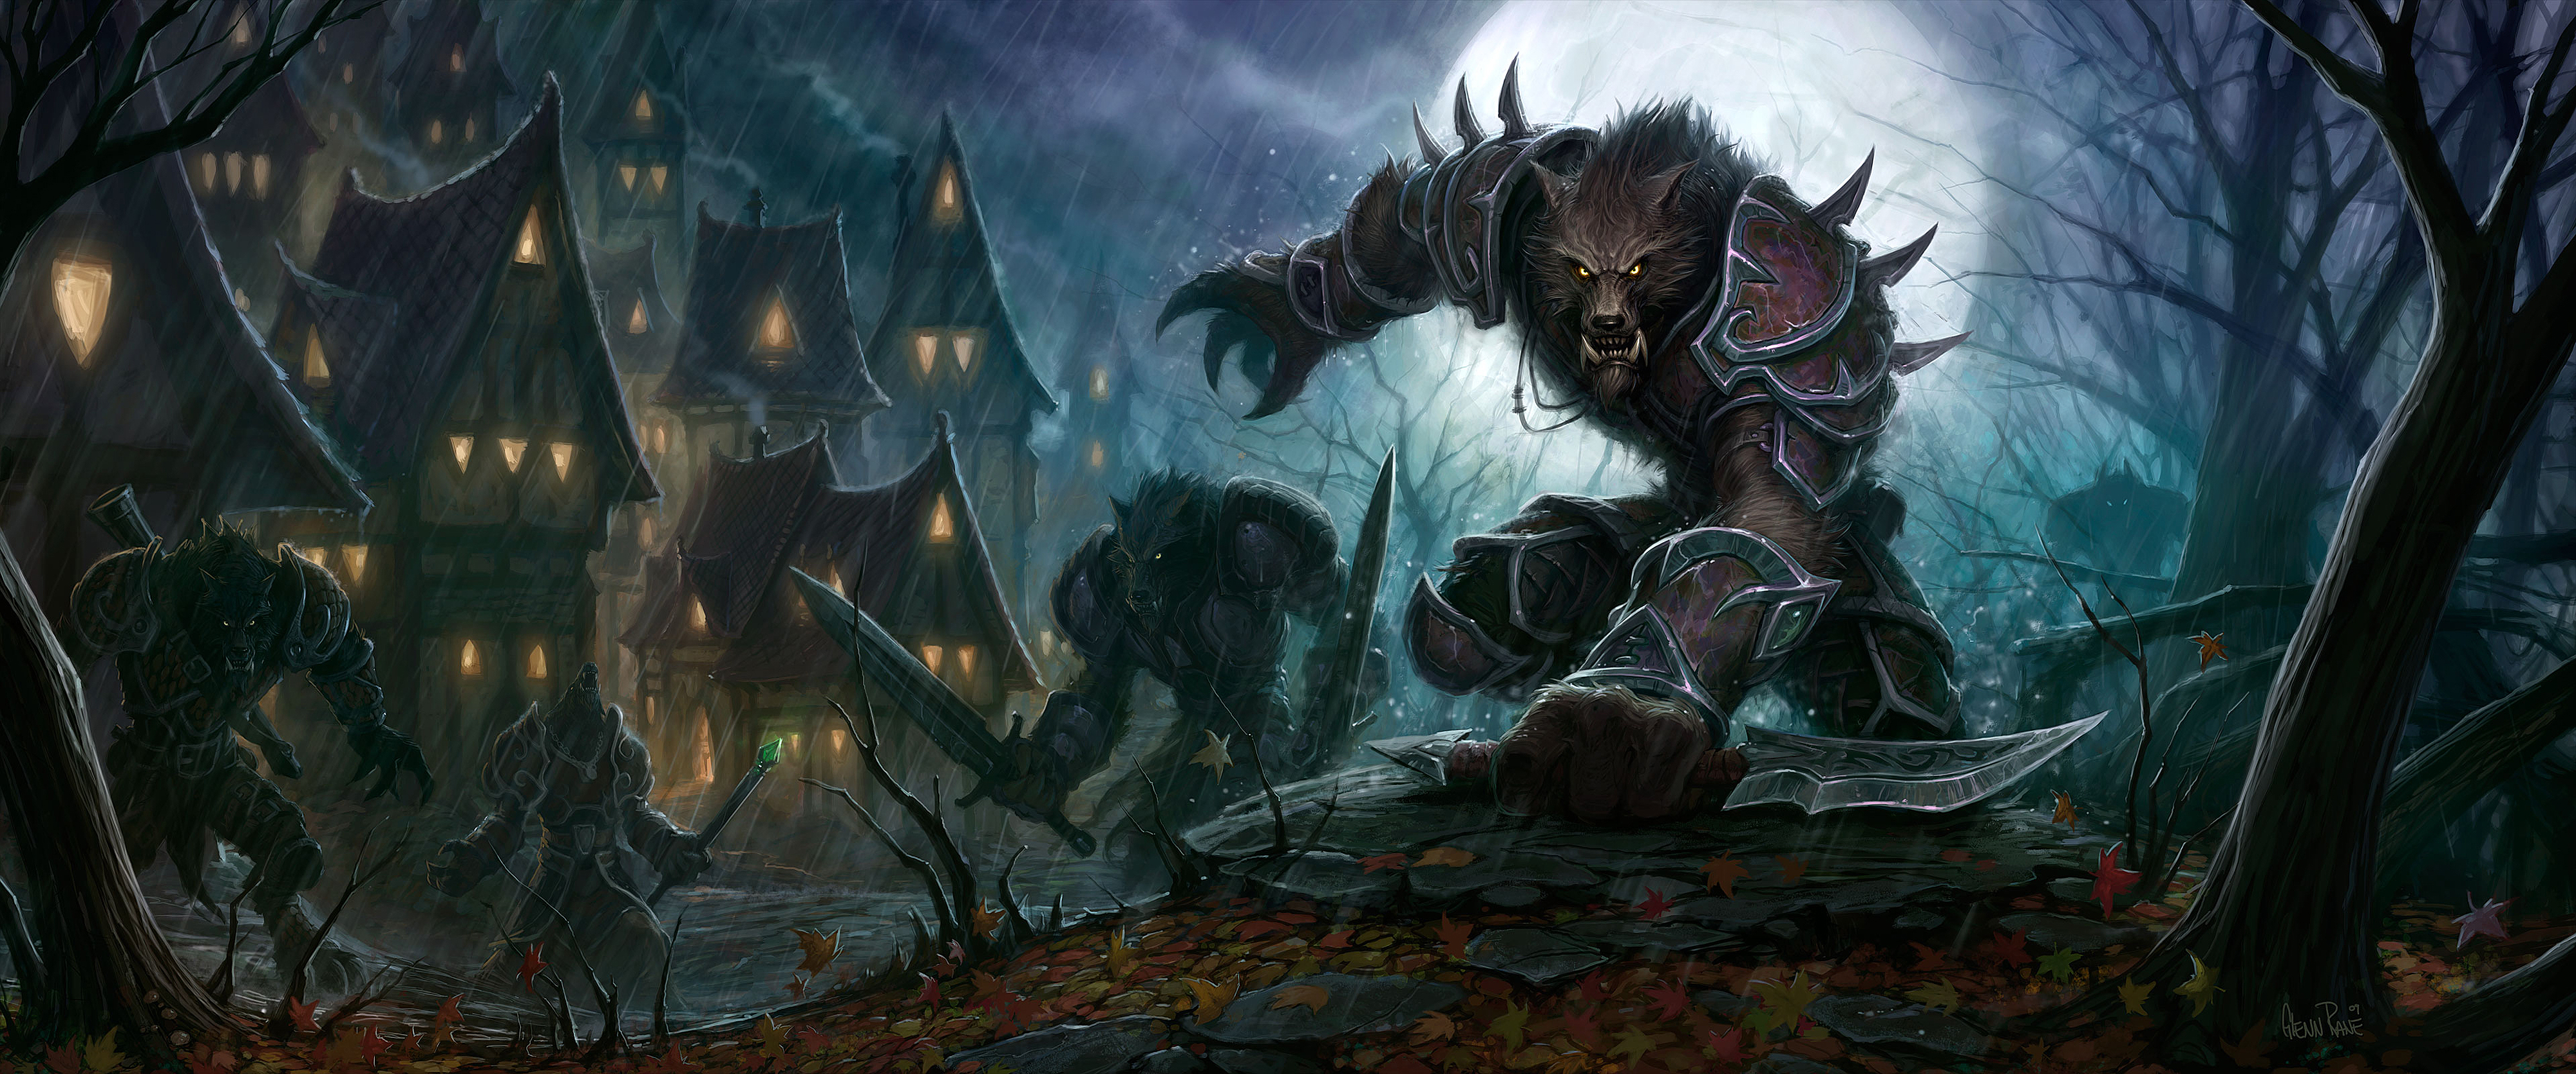 World of Warcraft: Cataclysm - desktop wallpaper